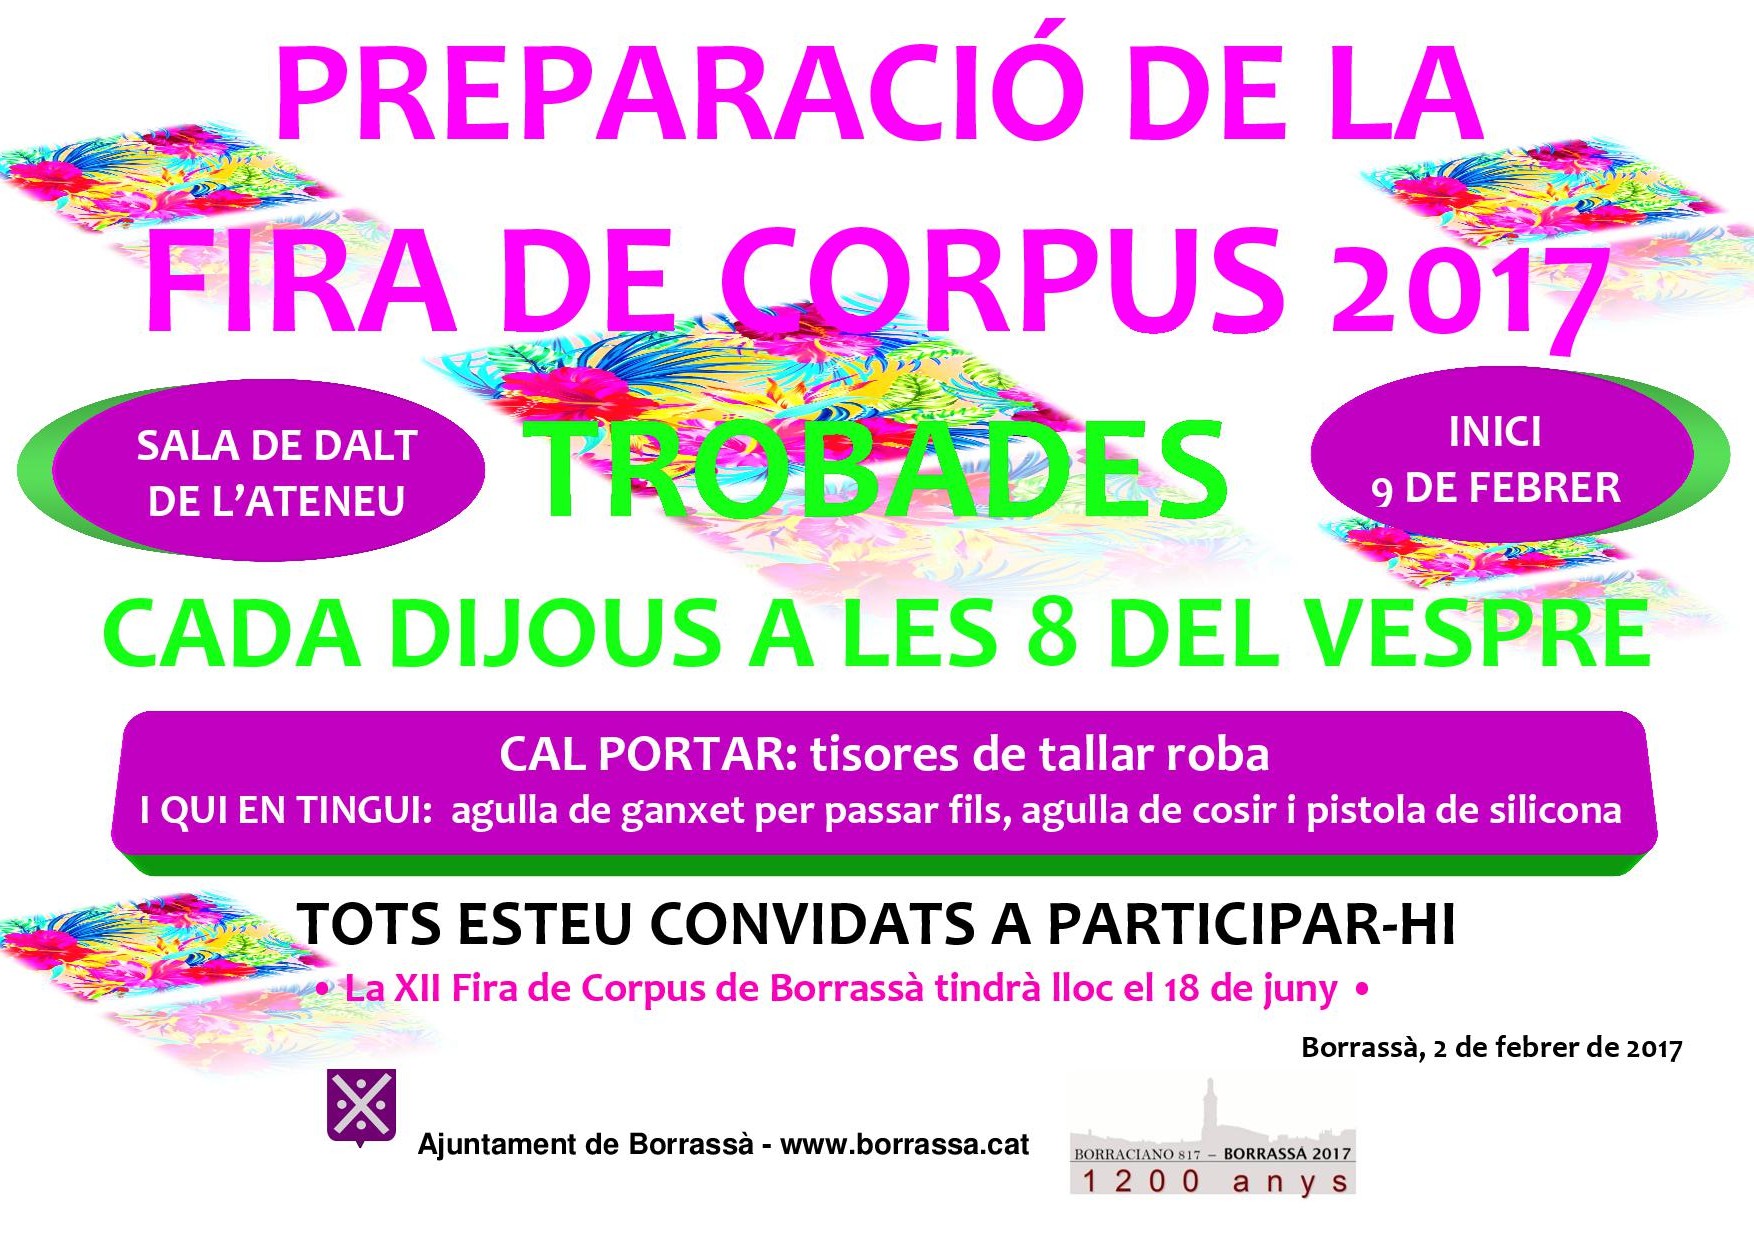 El dijous 9 de febrer començaran les Trobades per preparar la Fira de Corpus 2017, que tindrà lloc el diumenge 18 de juny. Es faran a la Sala de dalt de l'Ateneu a partir de les 8 del vespre.